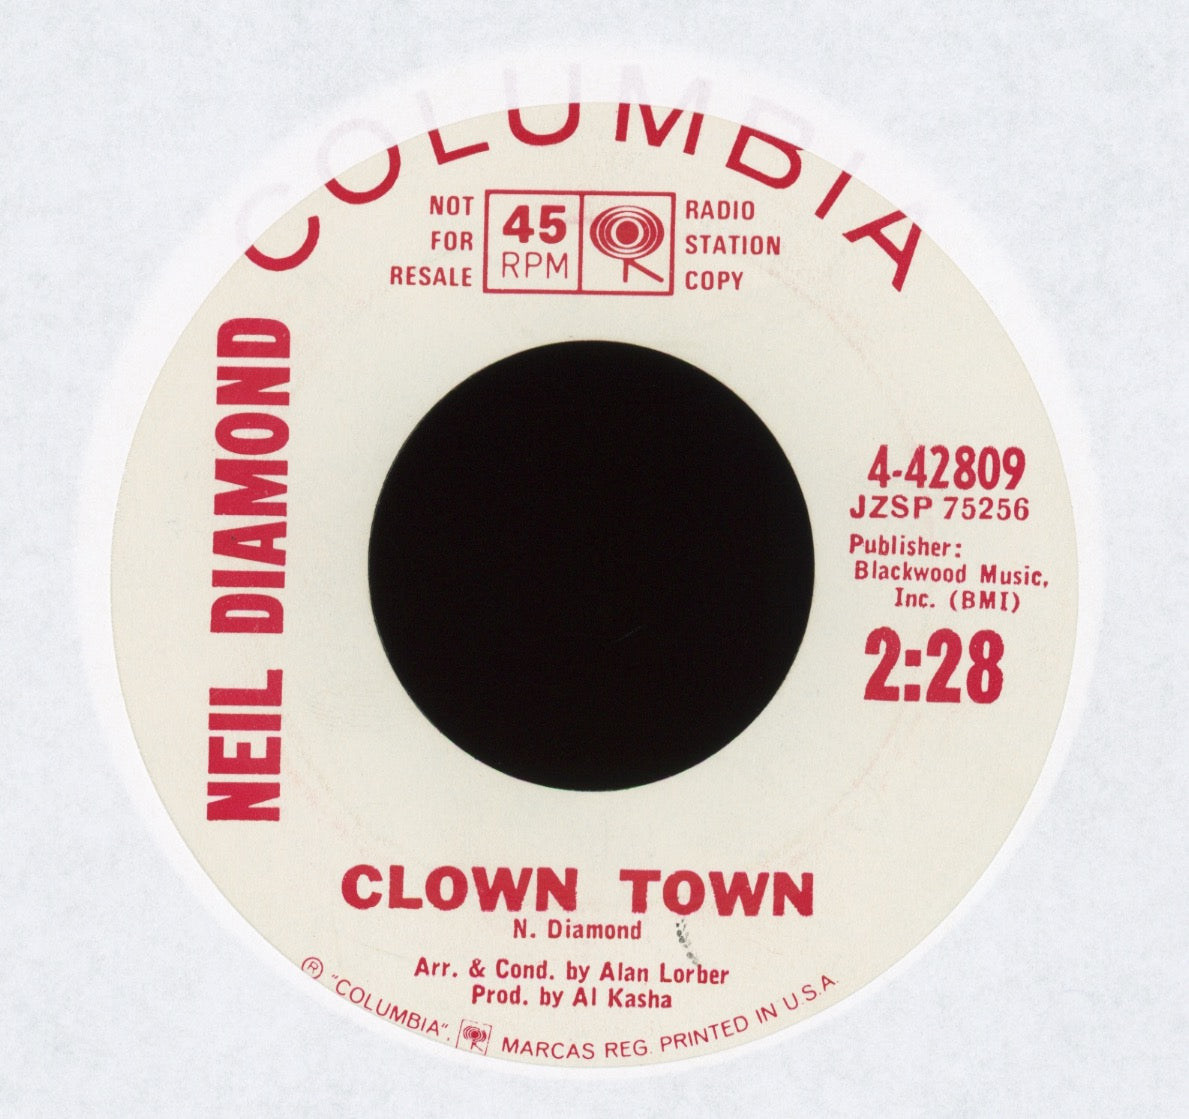 Neil Diamond - Clown Town on Columbia Promo